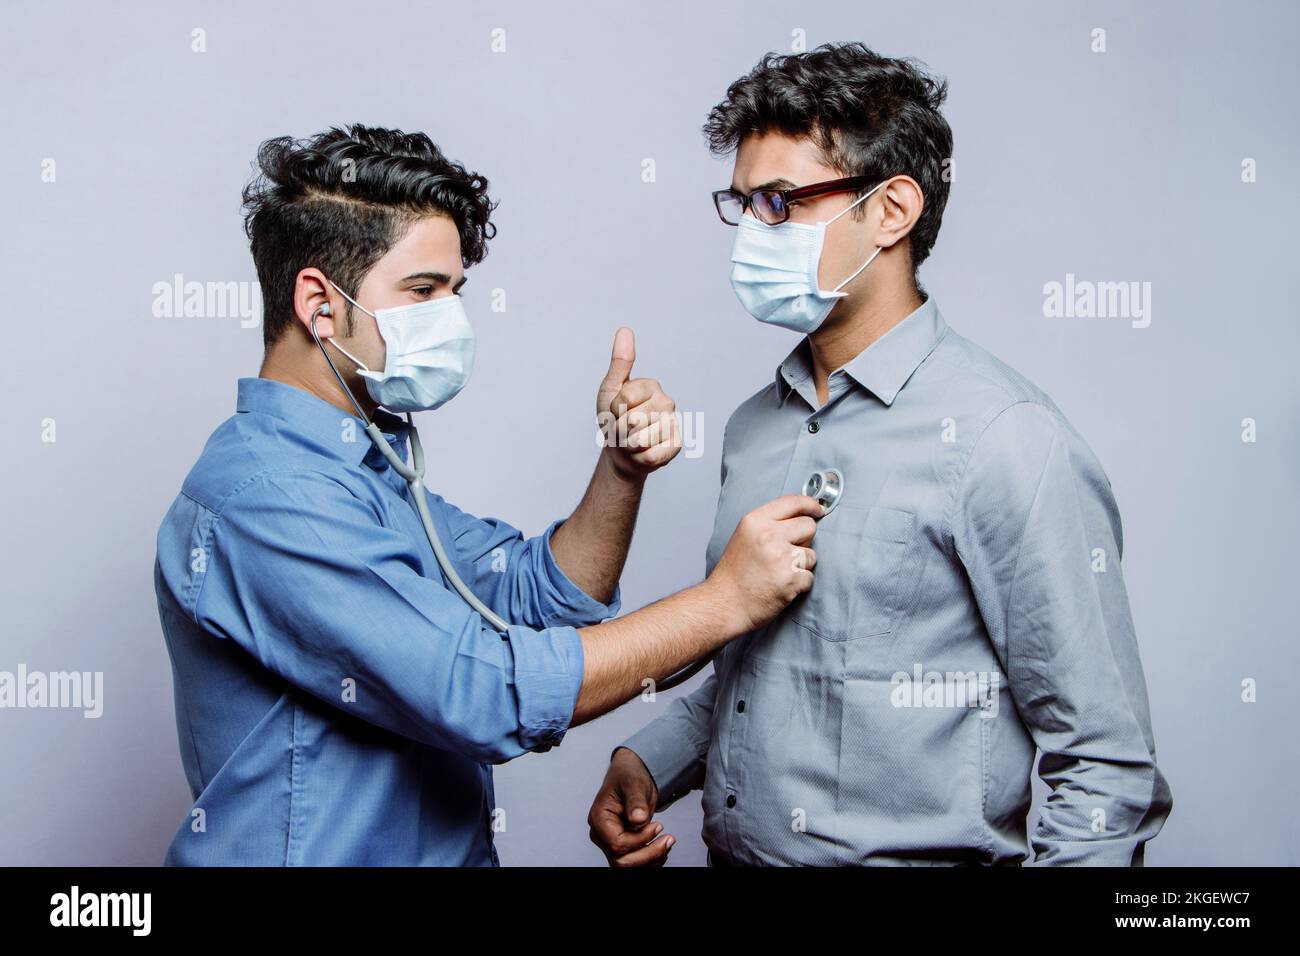 Ein männlicher Kardiologe, der eine medizinische Maske trägt, untersucht den Herzschlag eines männlichen Herzpatienten mit einem Stethoskop und gibt ein Zulassungszeichen mit Daumen-hoch-G Stockfoto